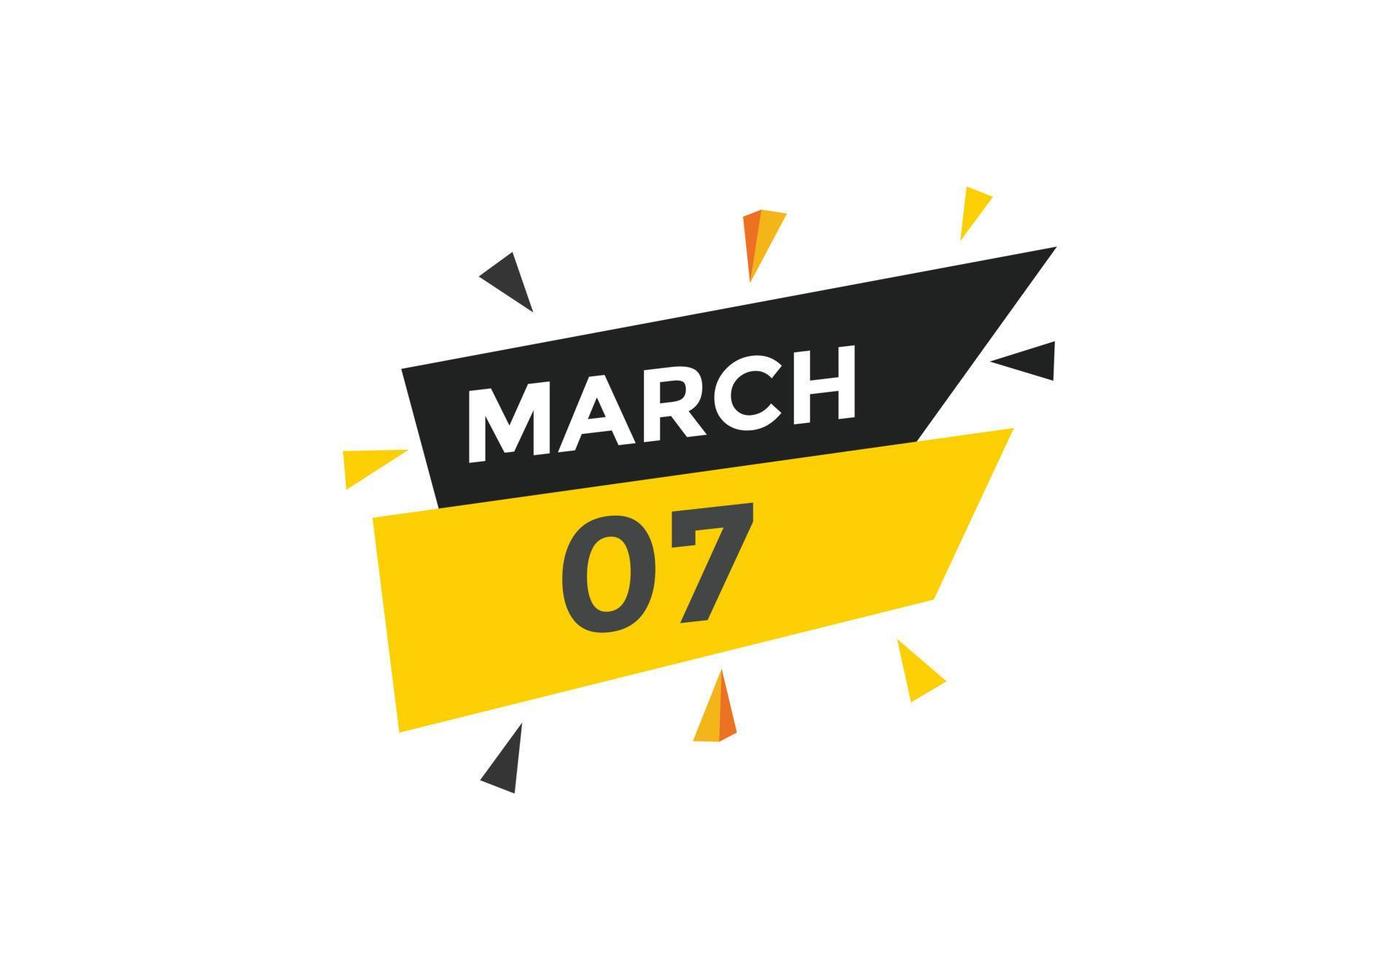 marzo 7 calendario promemoria. 7 ° marzo quotidiano calendario icona modello. calendario 7 ° marzo icona design modello. vettore illustrazione